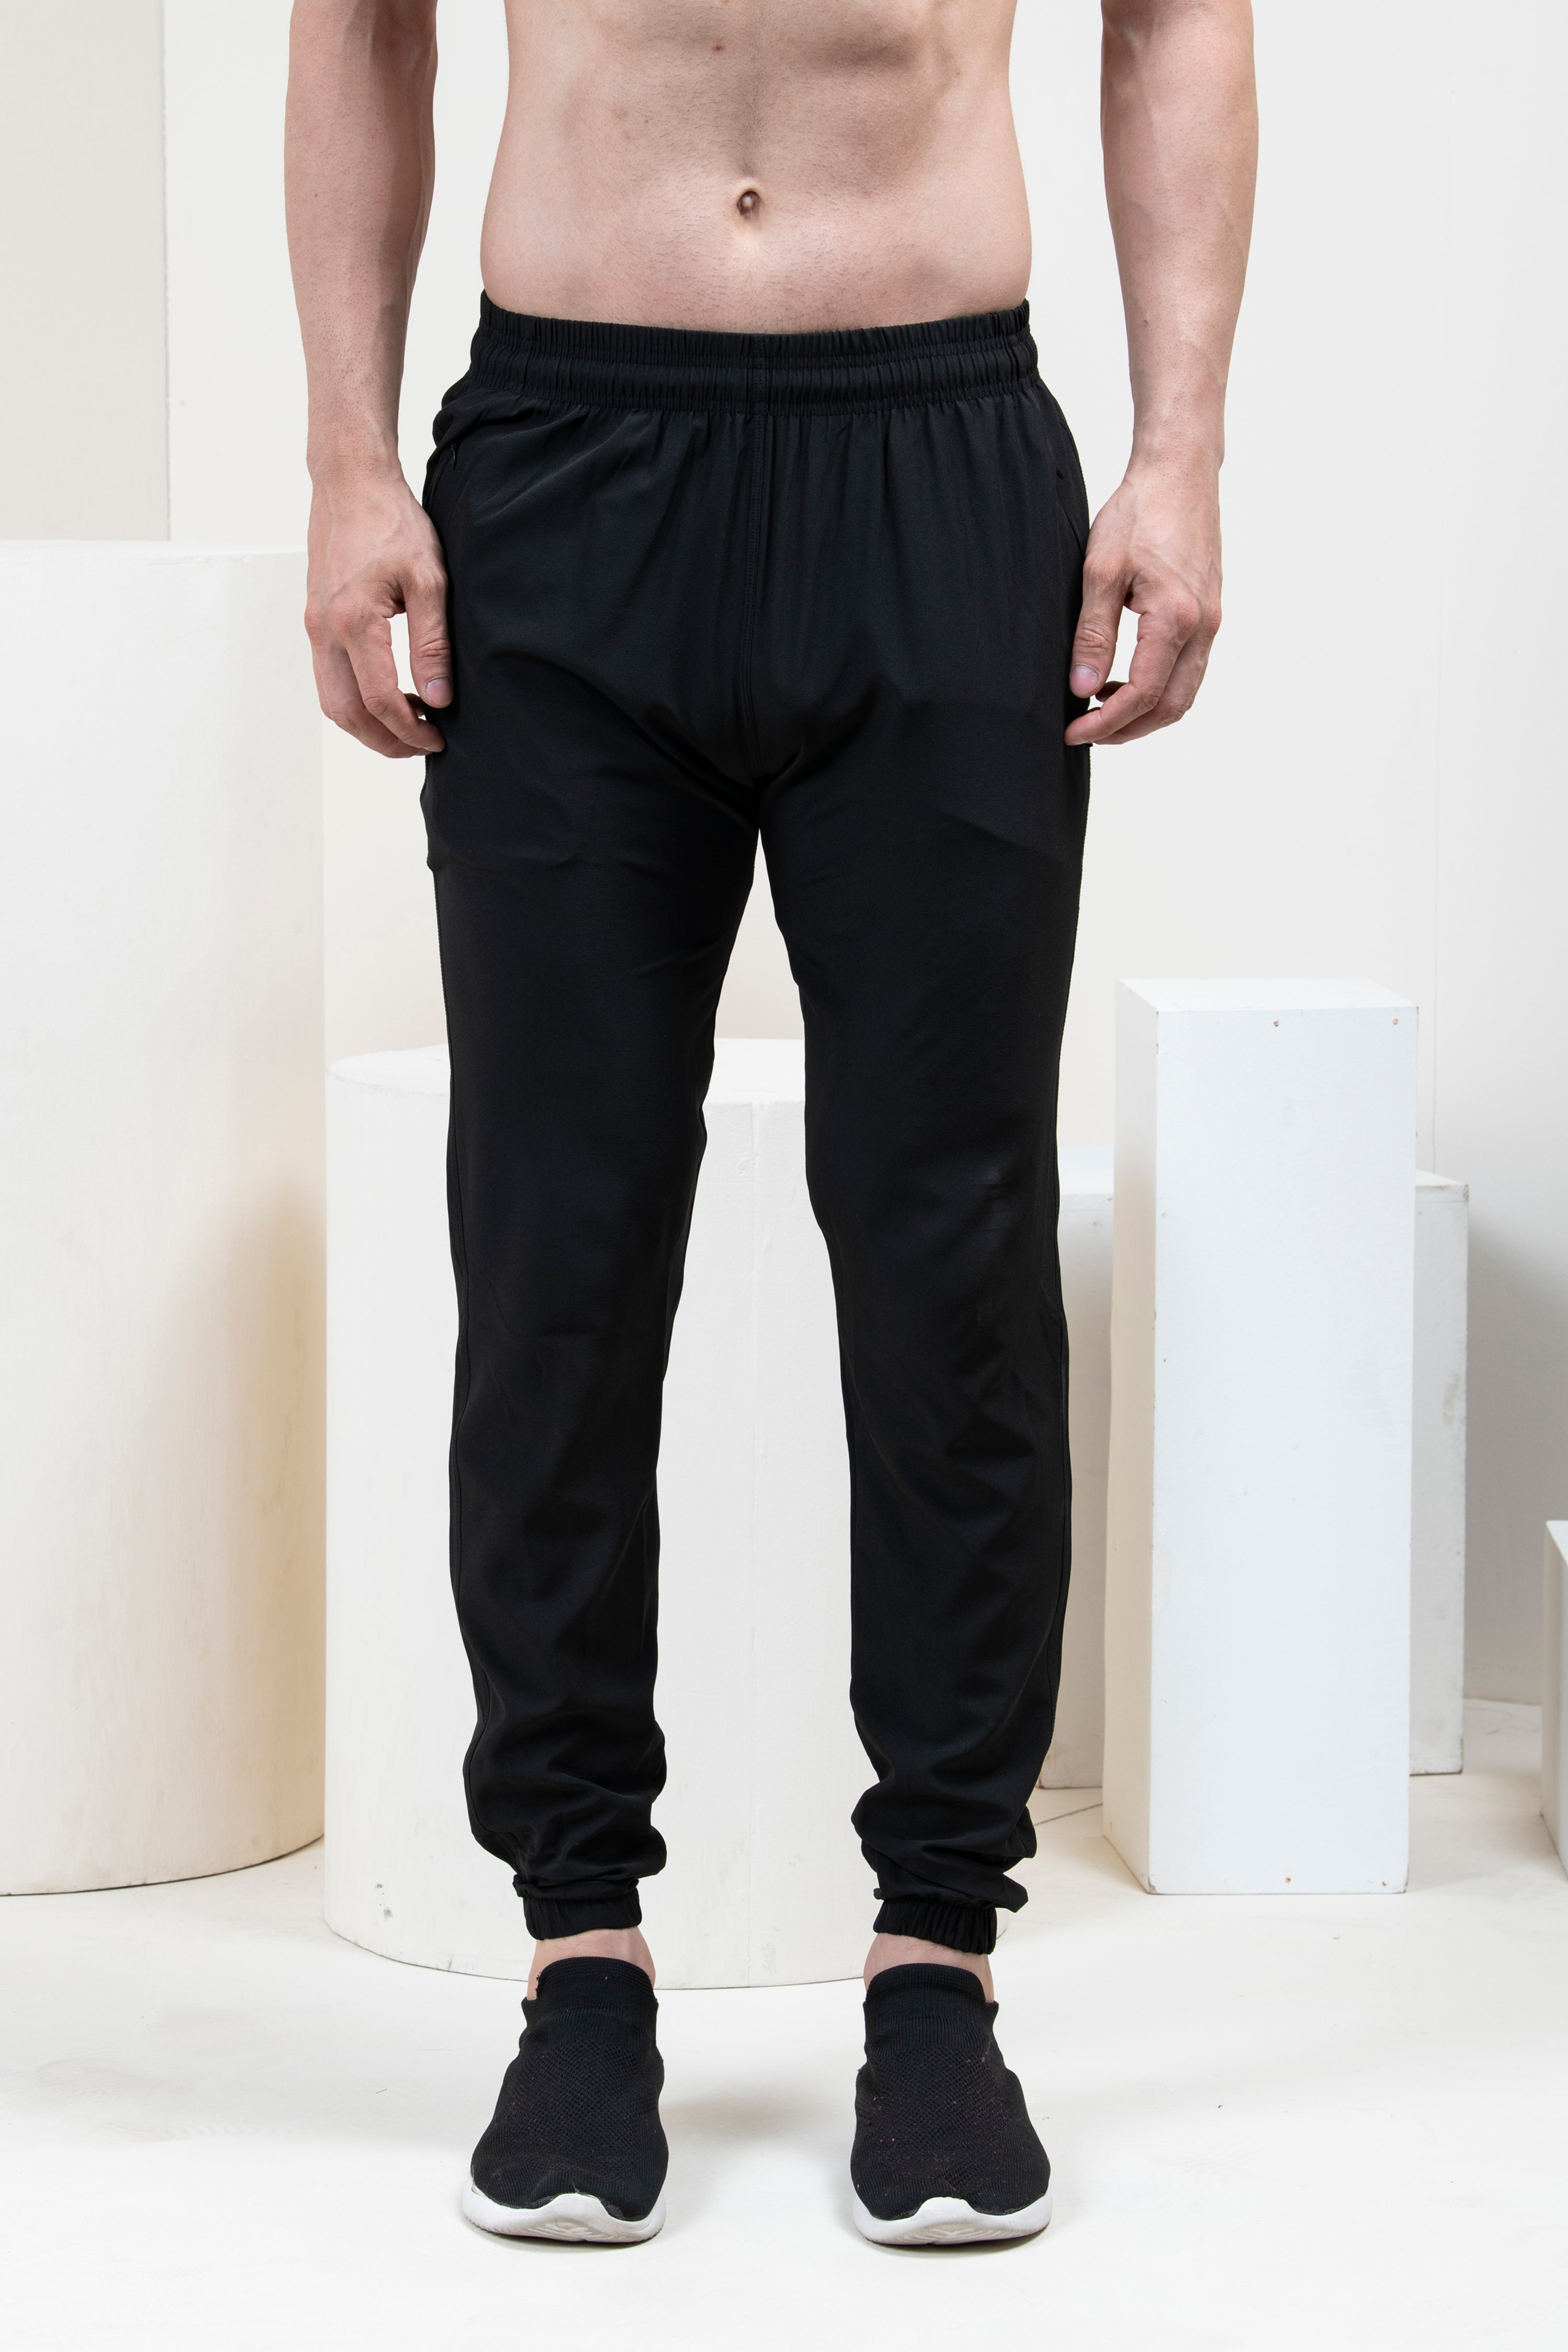 Buy Grey Track Pants for Men by SHOWOFF Online  Ajiocom